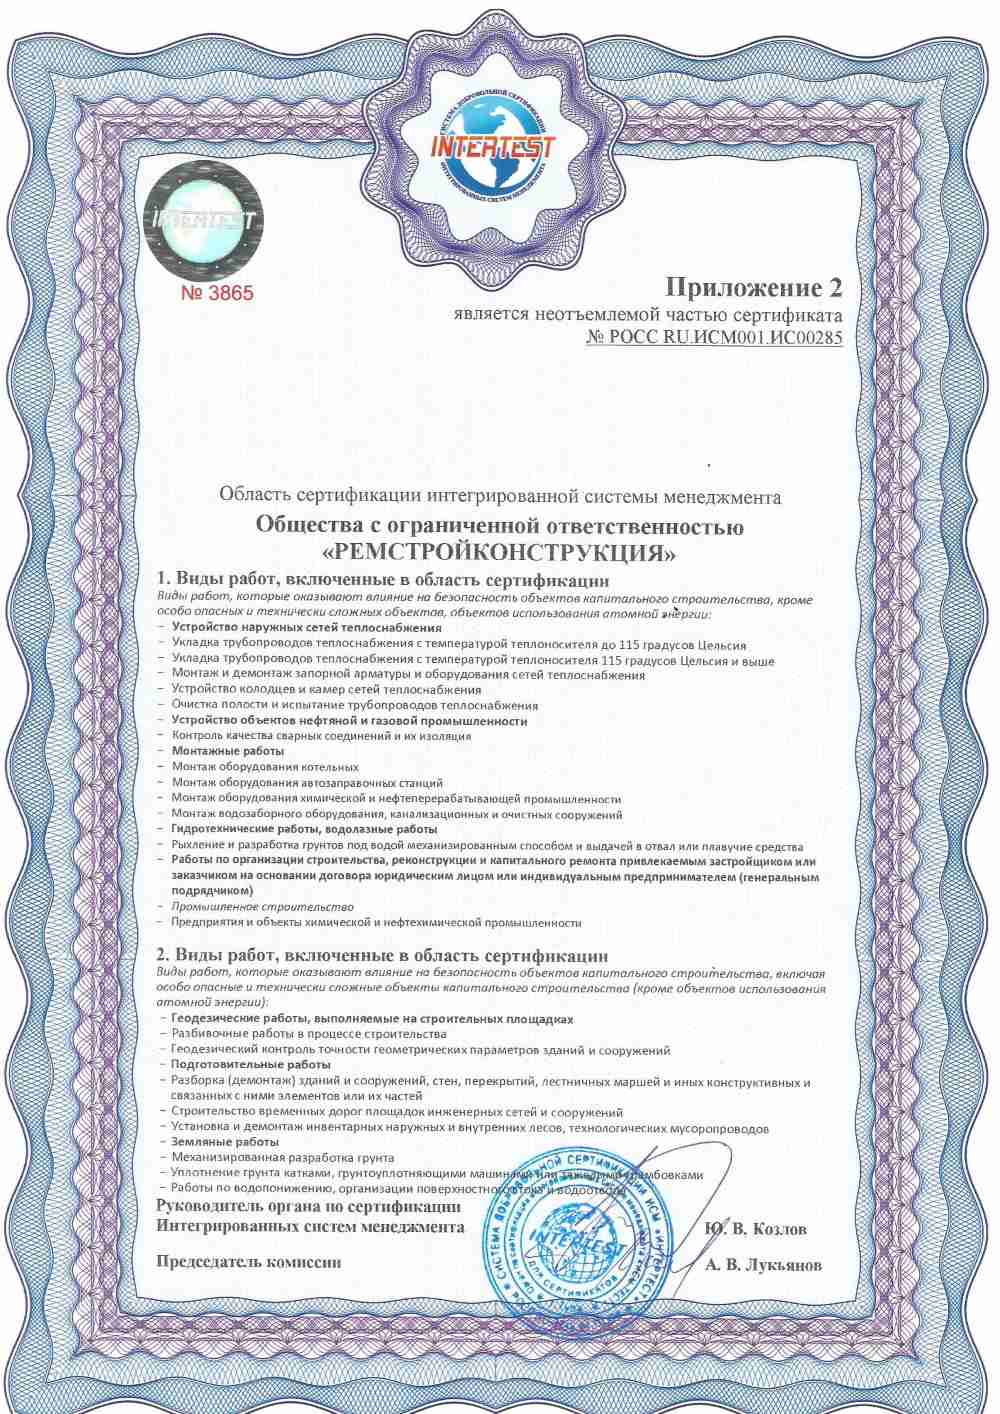 Приложение 2 к сертификату ISO 9001 ИСМ